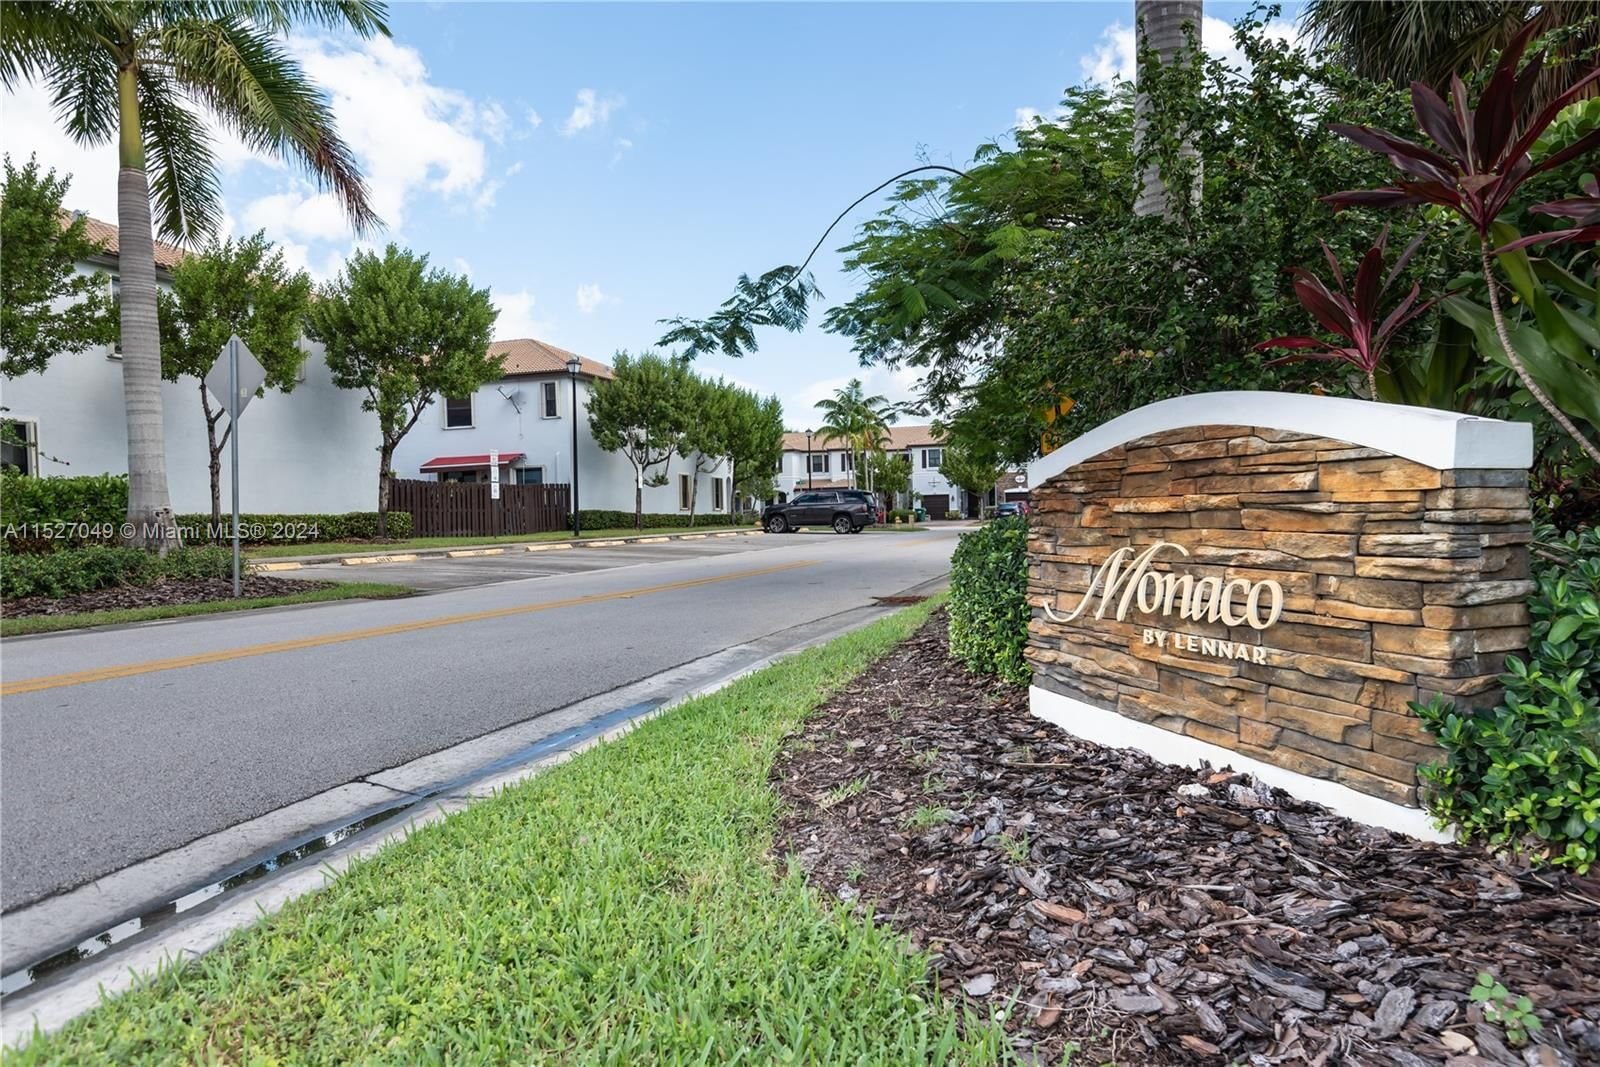 Real estate property located at 11262 88th terrace #11262, Miami-Dade County, VILLA BELLO, Doral, FL